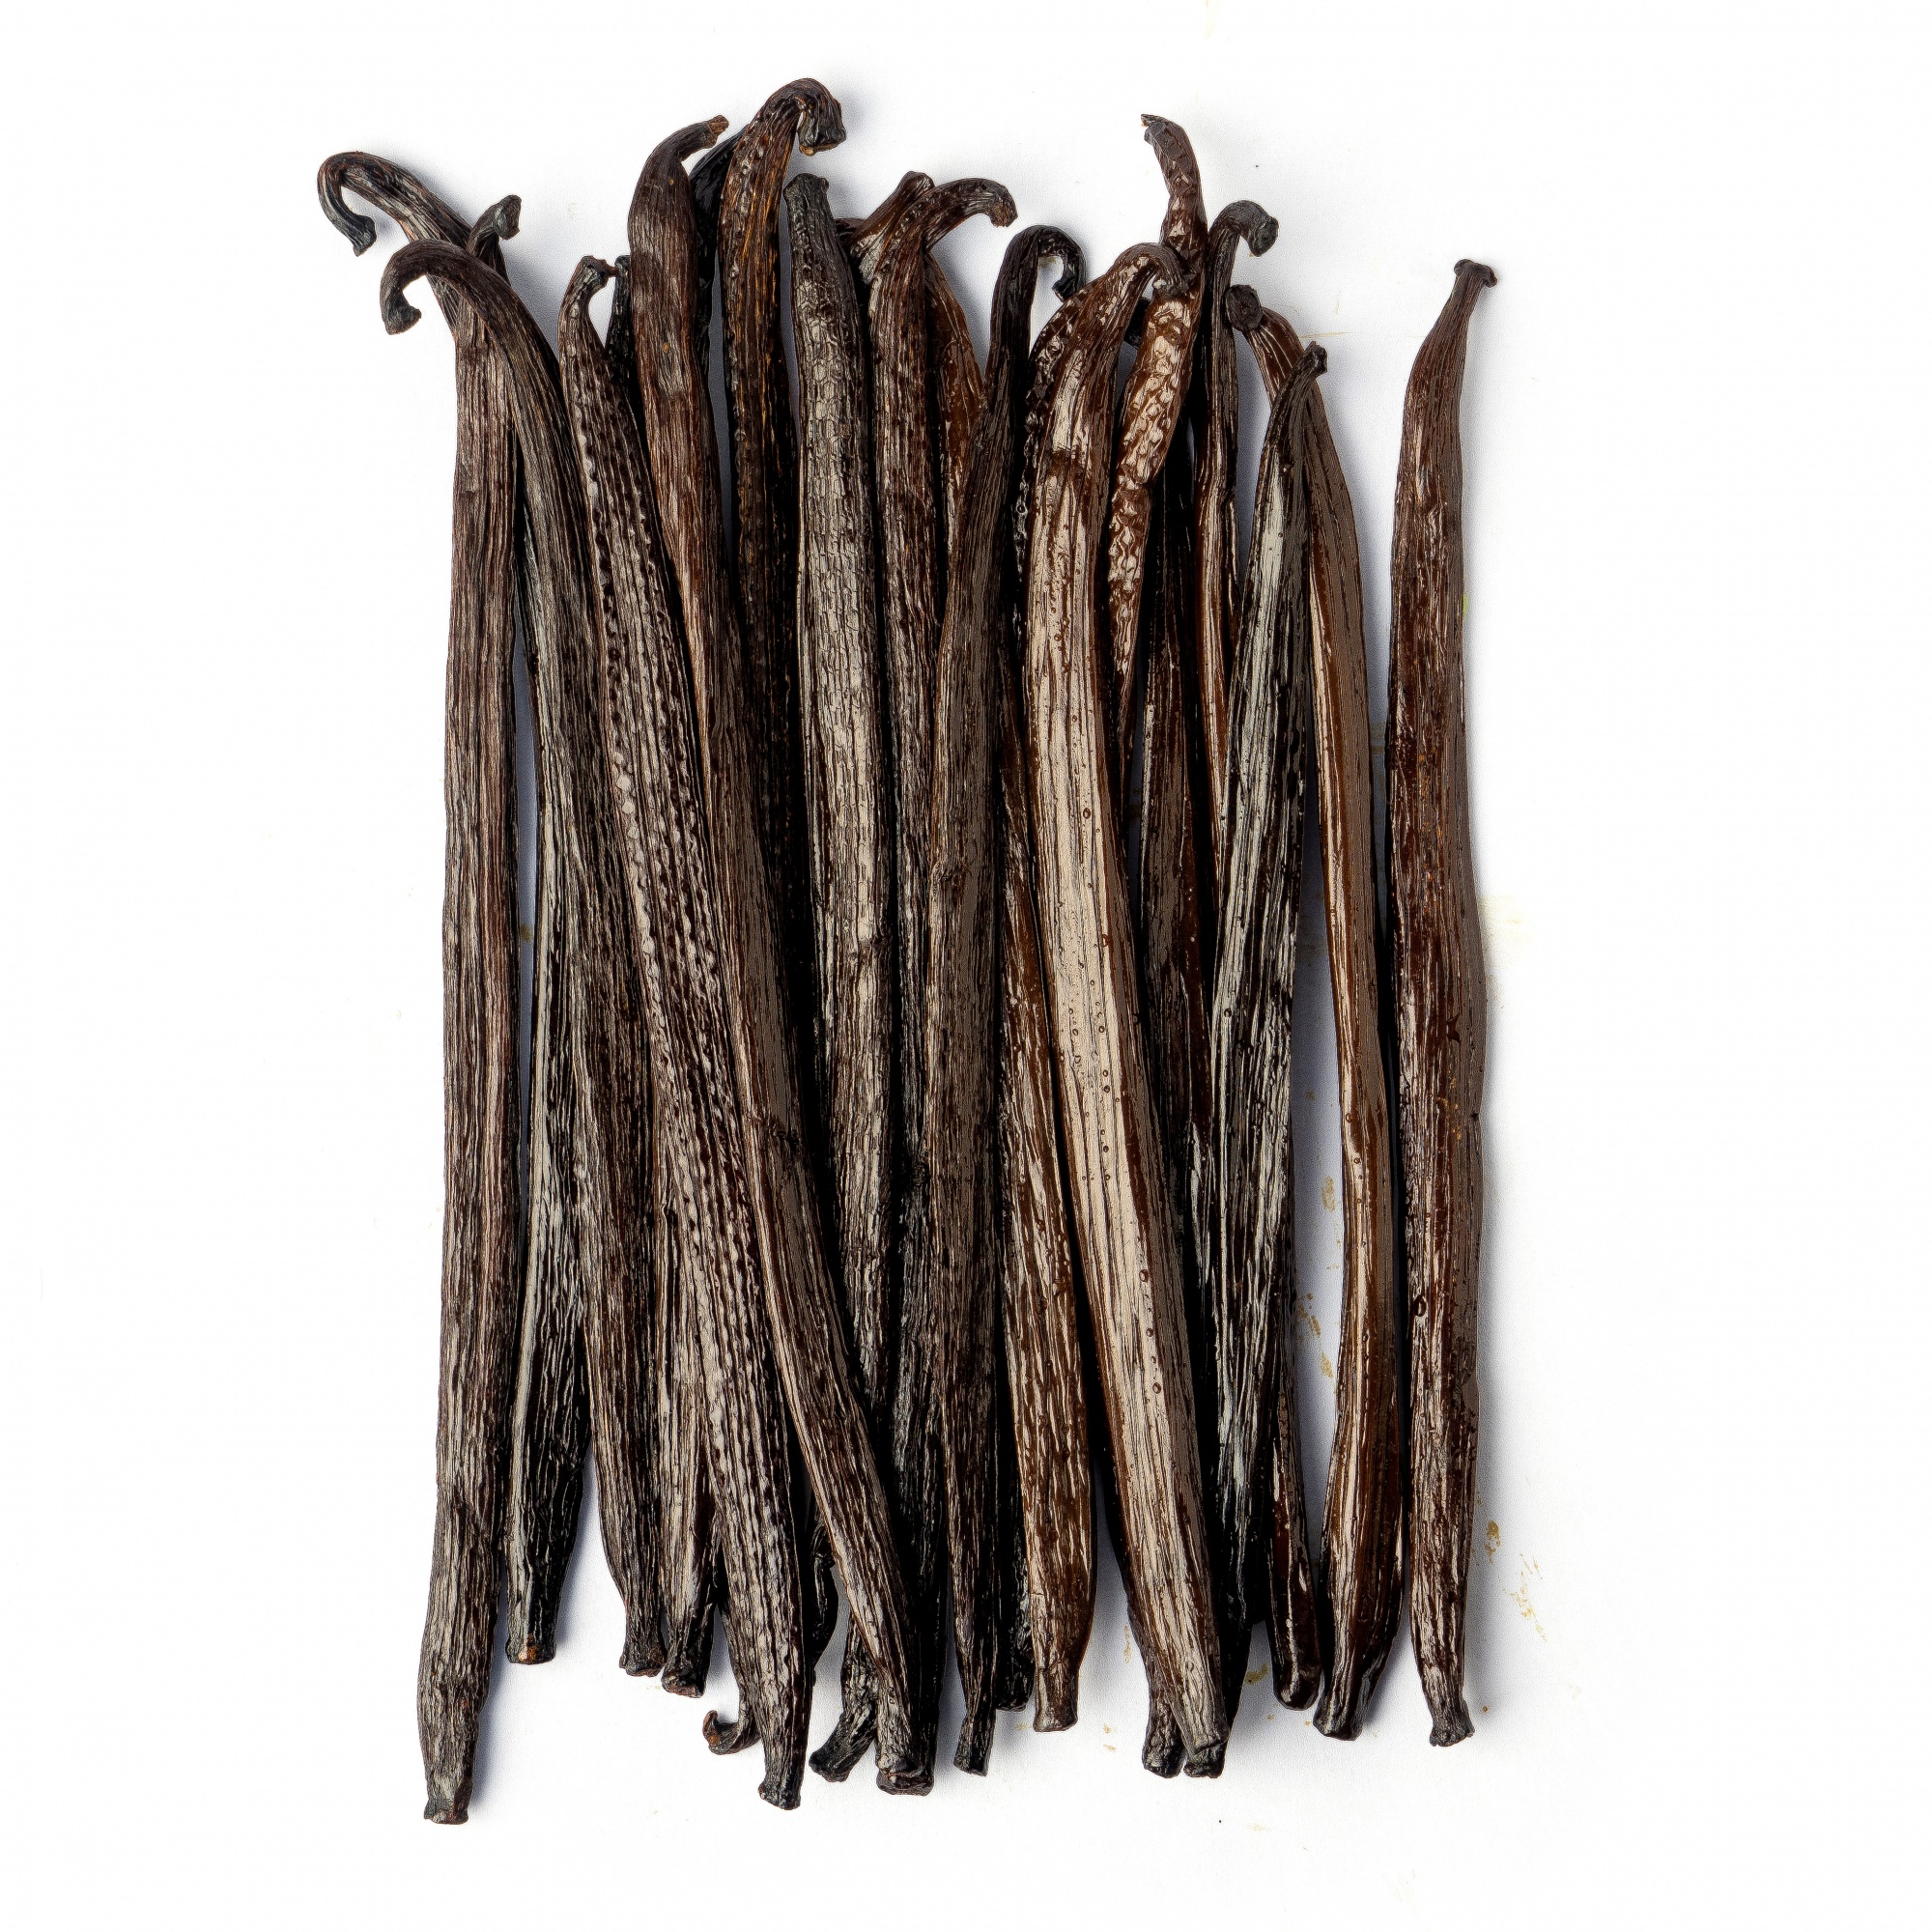 Натуральная ваниль Гурмэ в стручках 14-18 см, Уганда, 100 г  | Фото — Магазин Andy Chef  1